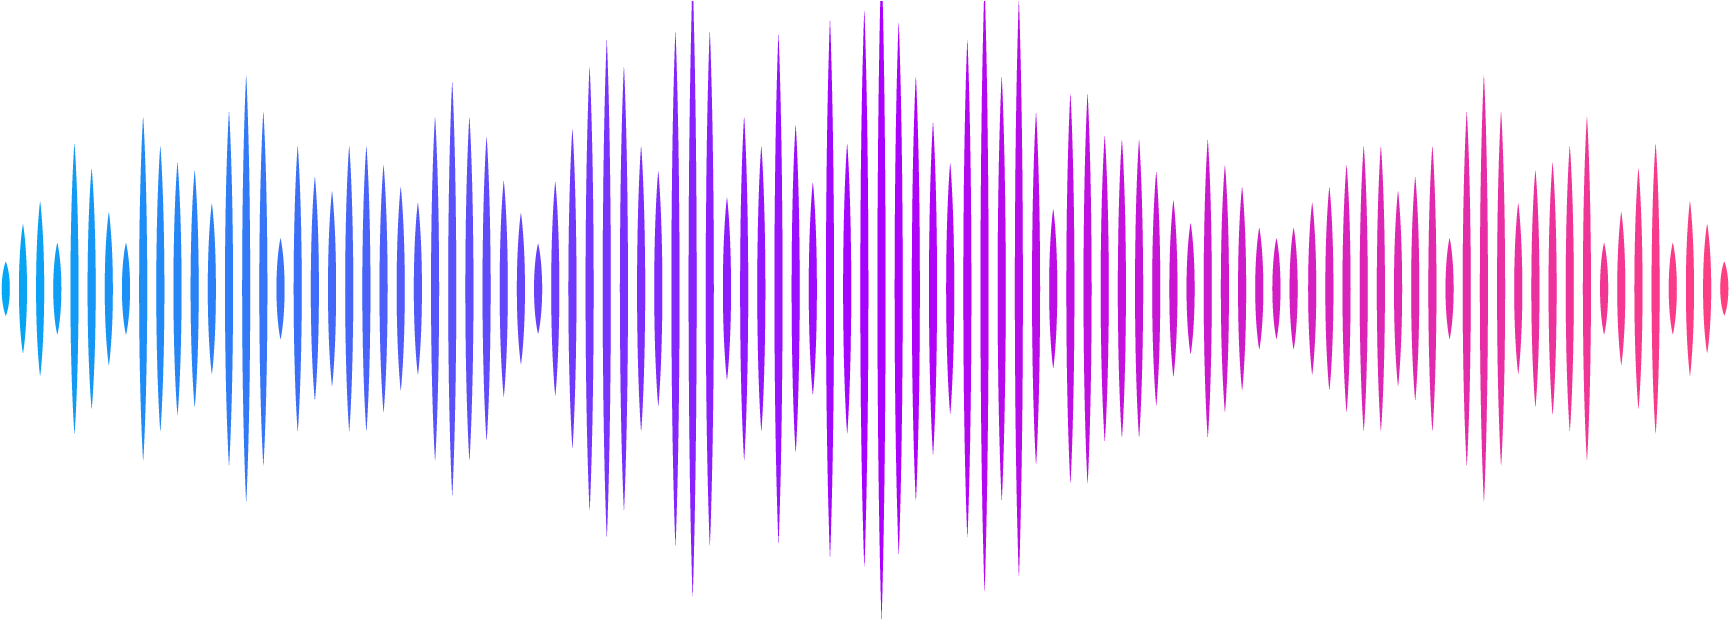 Волнующий звук. Звуковая волна. Звуковая дорожка. Графическое изображение звука. Звуковая волна эквалайзер.